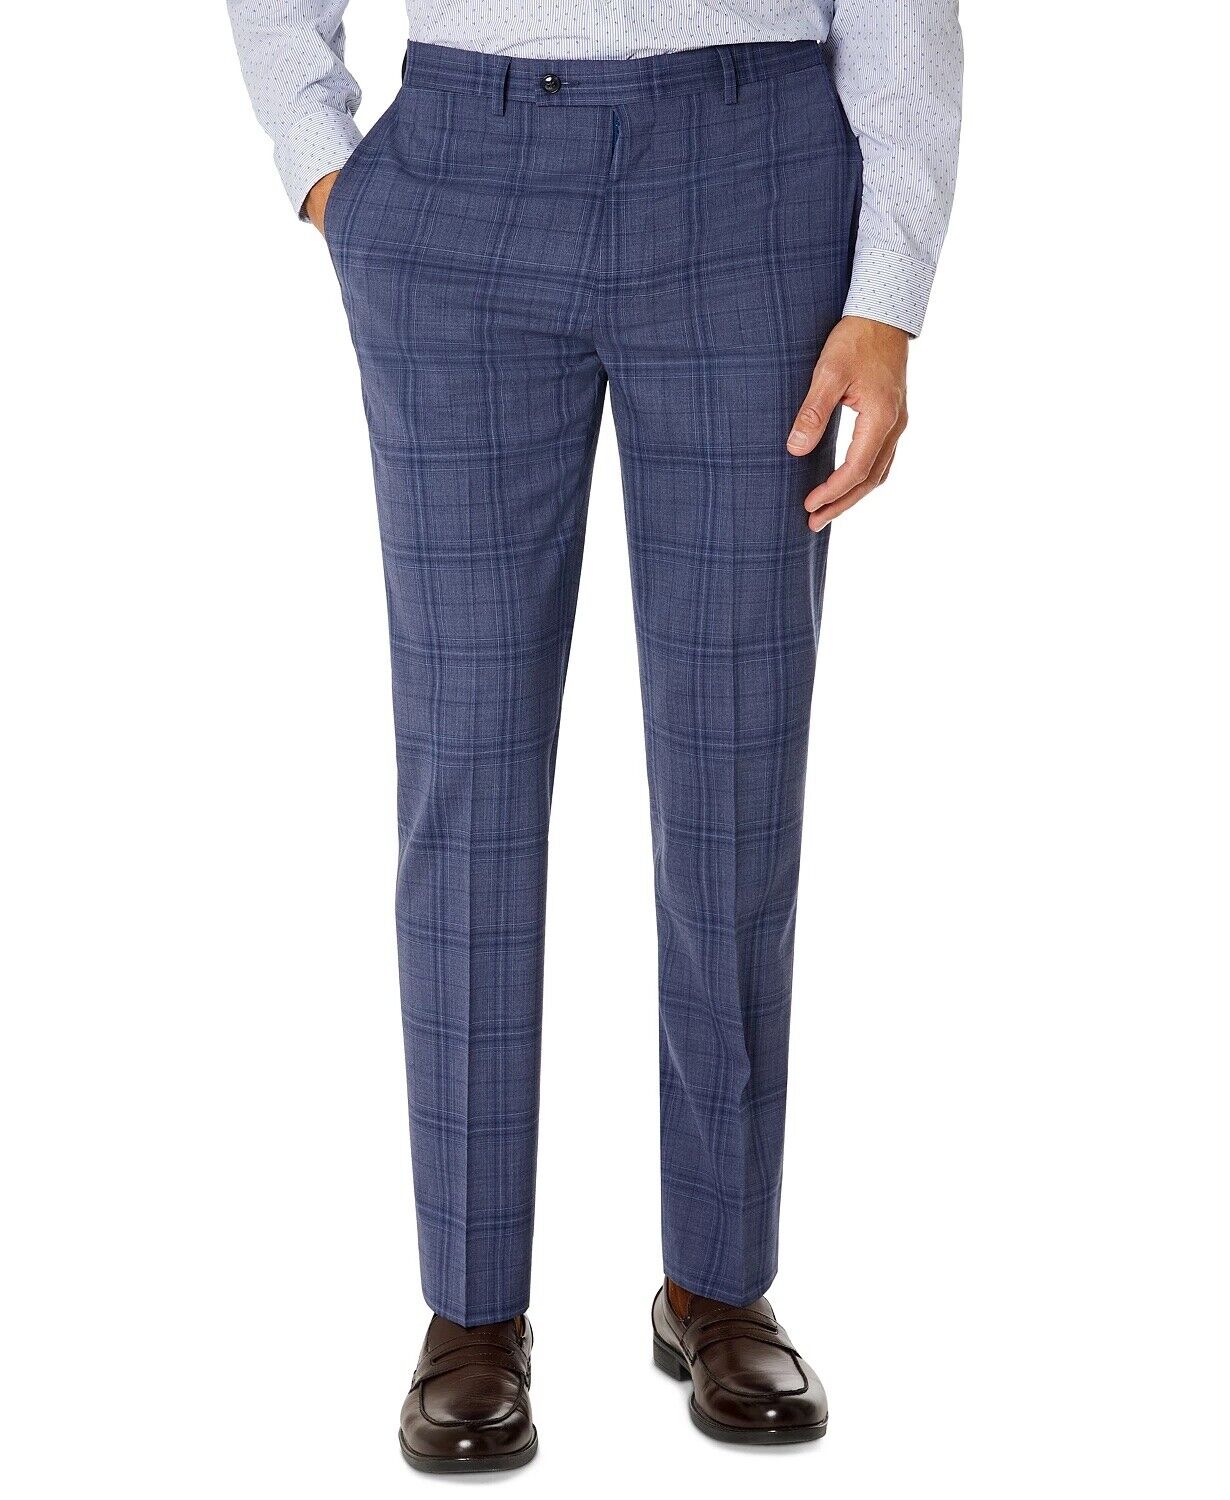 Calvin Klein Men's Slim-Fit Plaid Suit Dress Pants 28 X 29 Blue Plaid  628735705061 | eBay